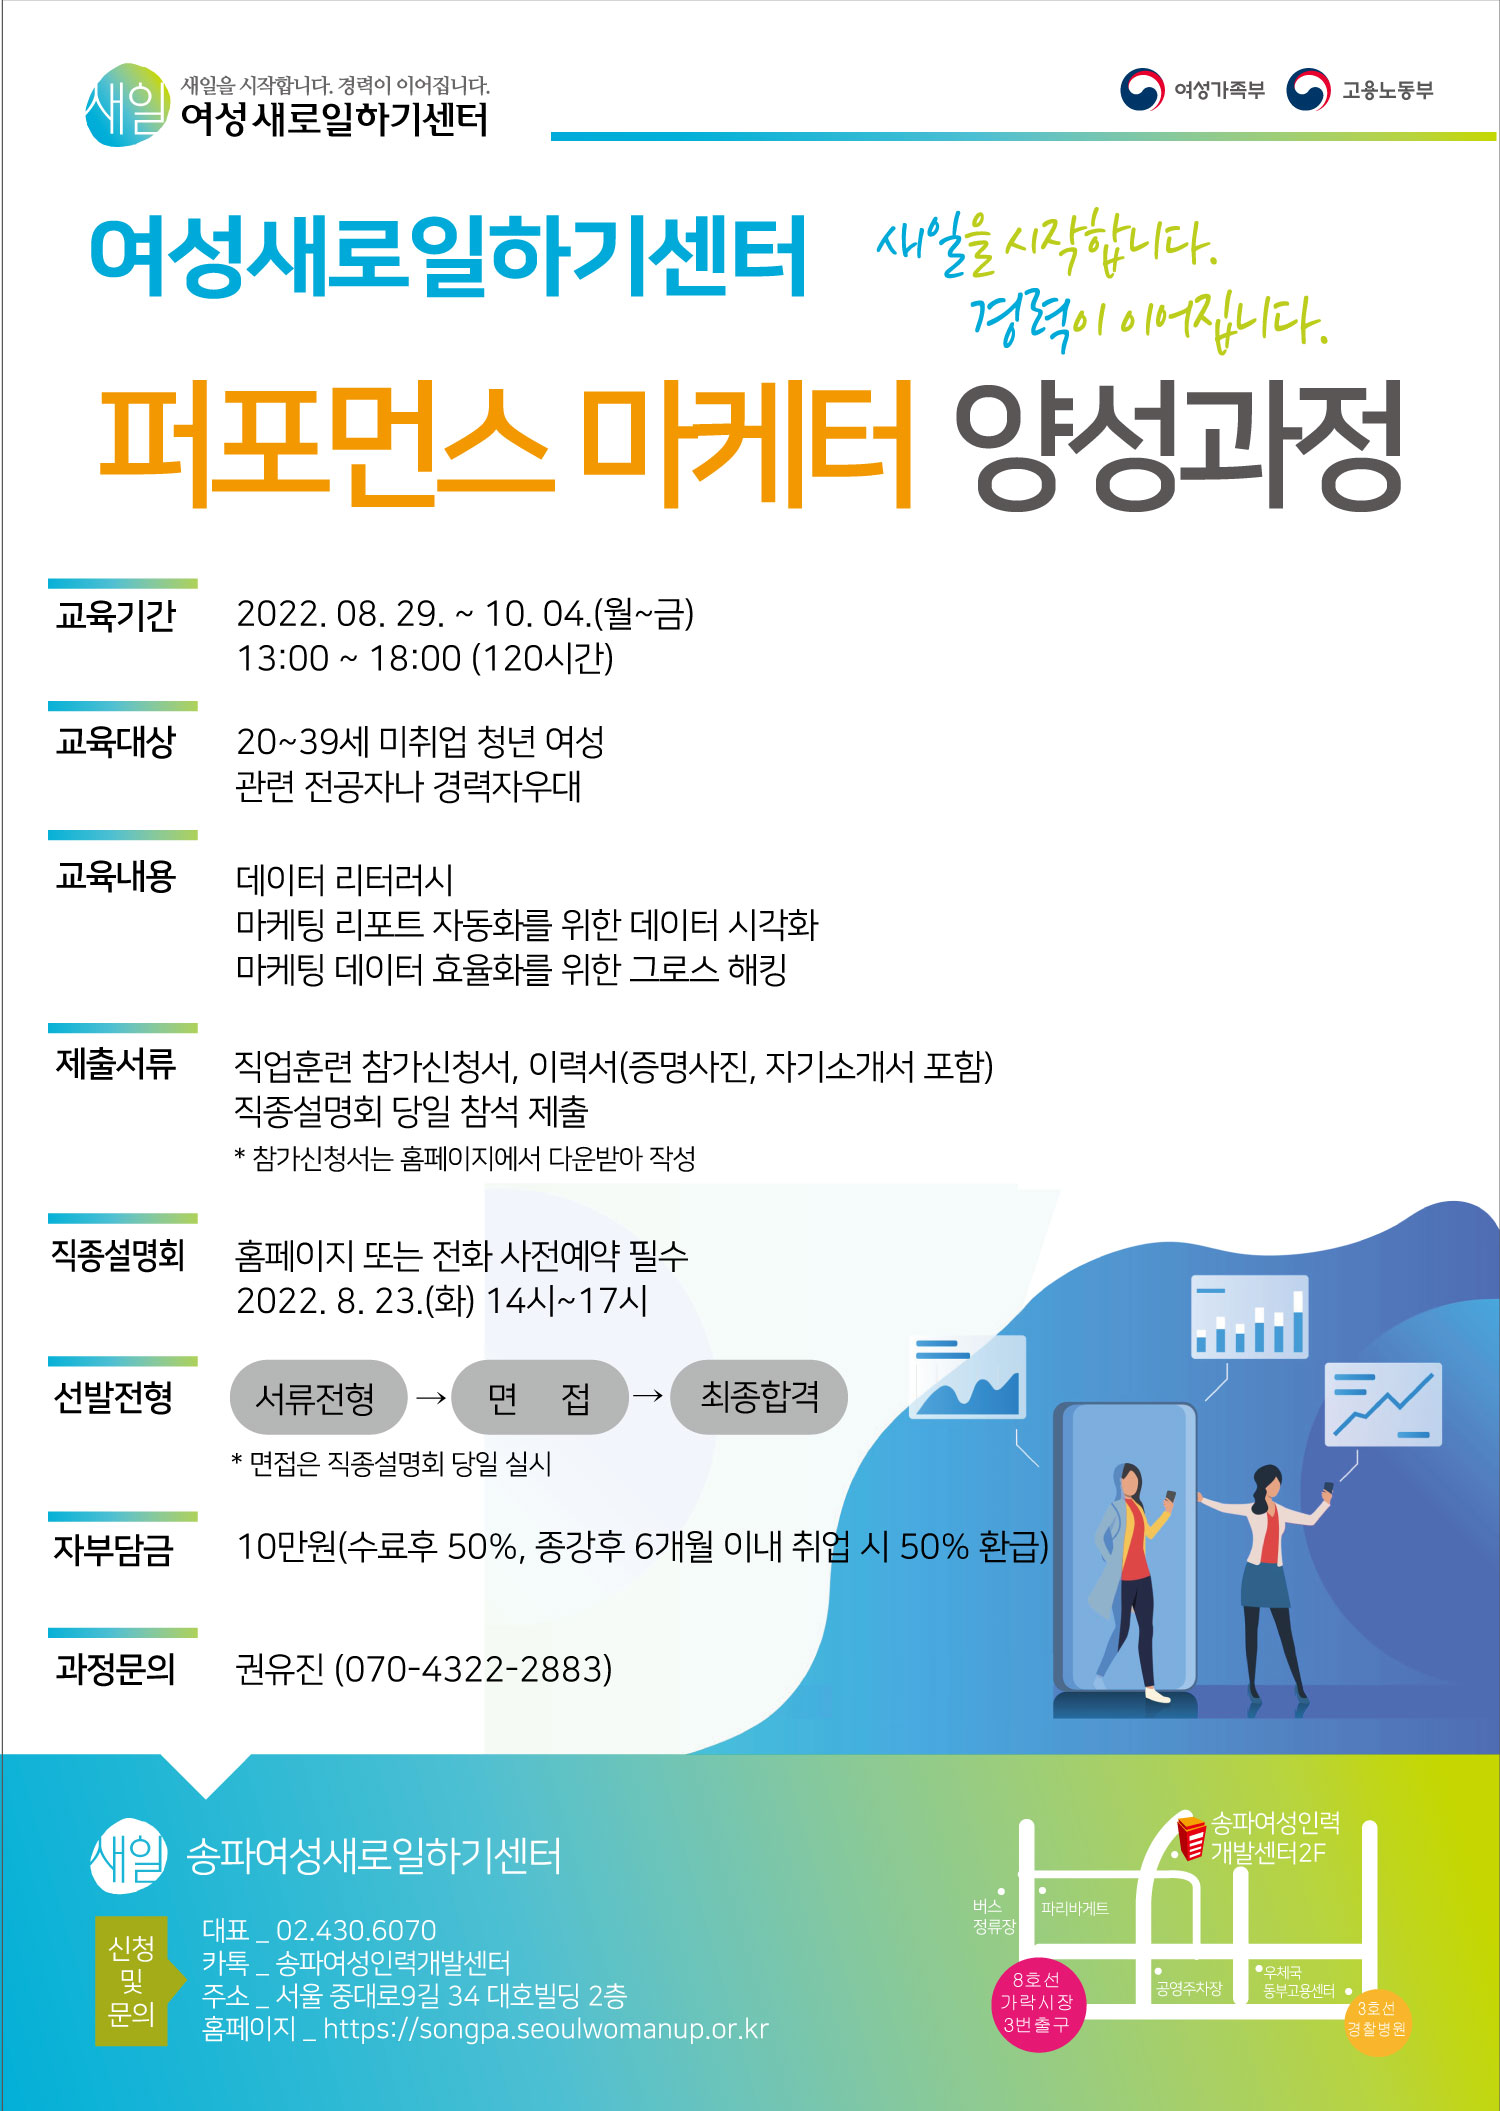 2022-퍼포먼스마케터-홍보지-2.jpg